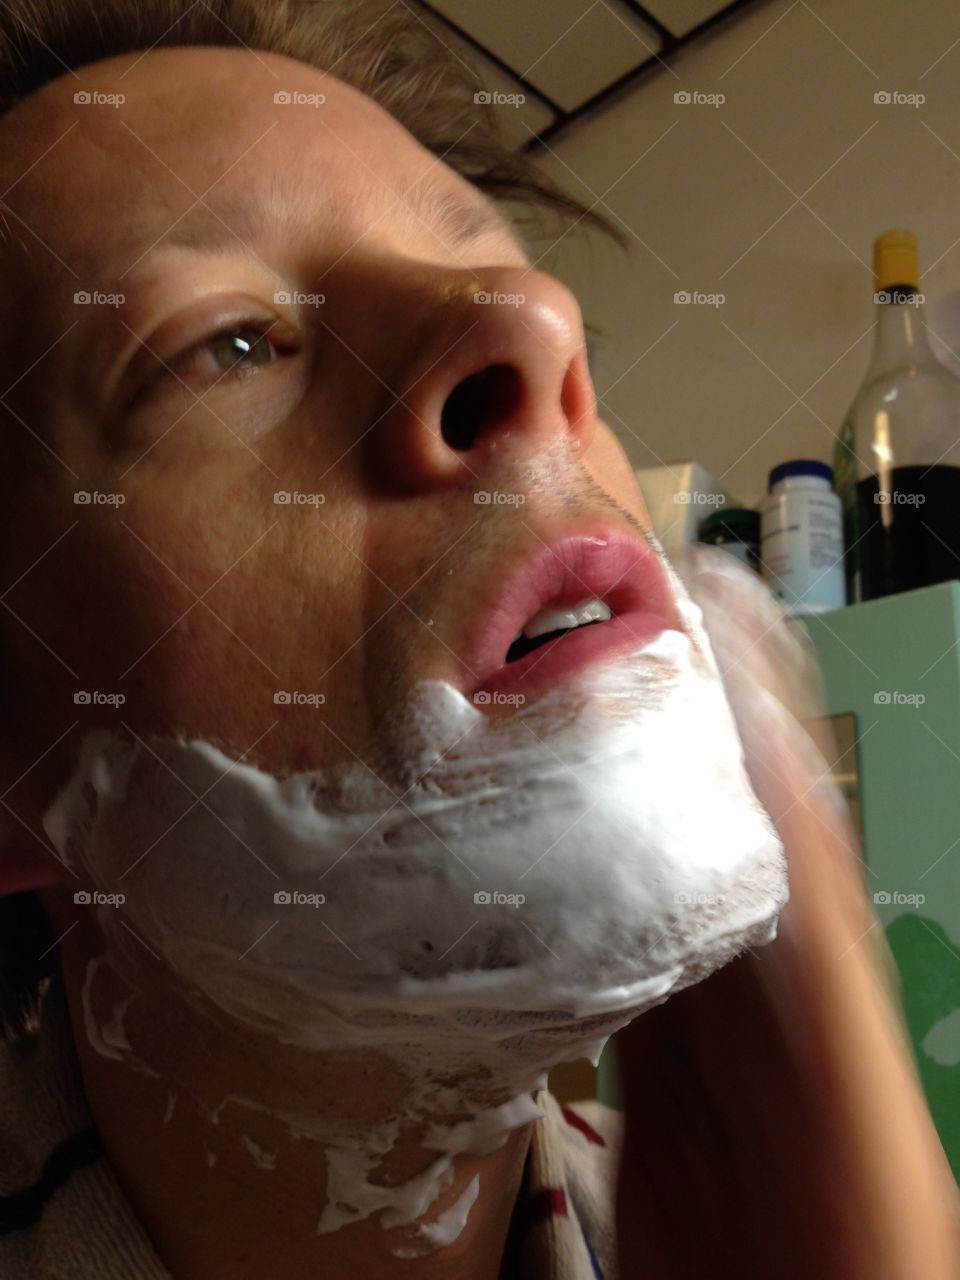 Man looking focused and applying shaving foam in the bathroom.